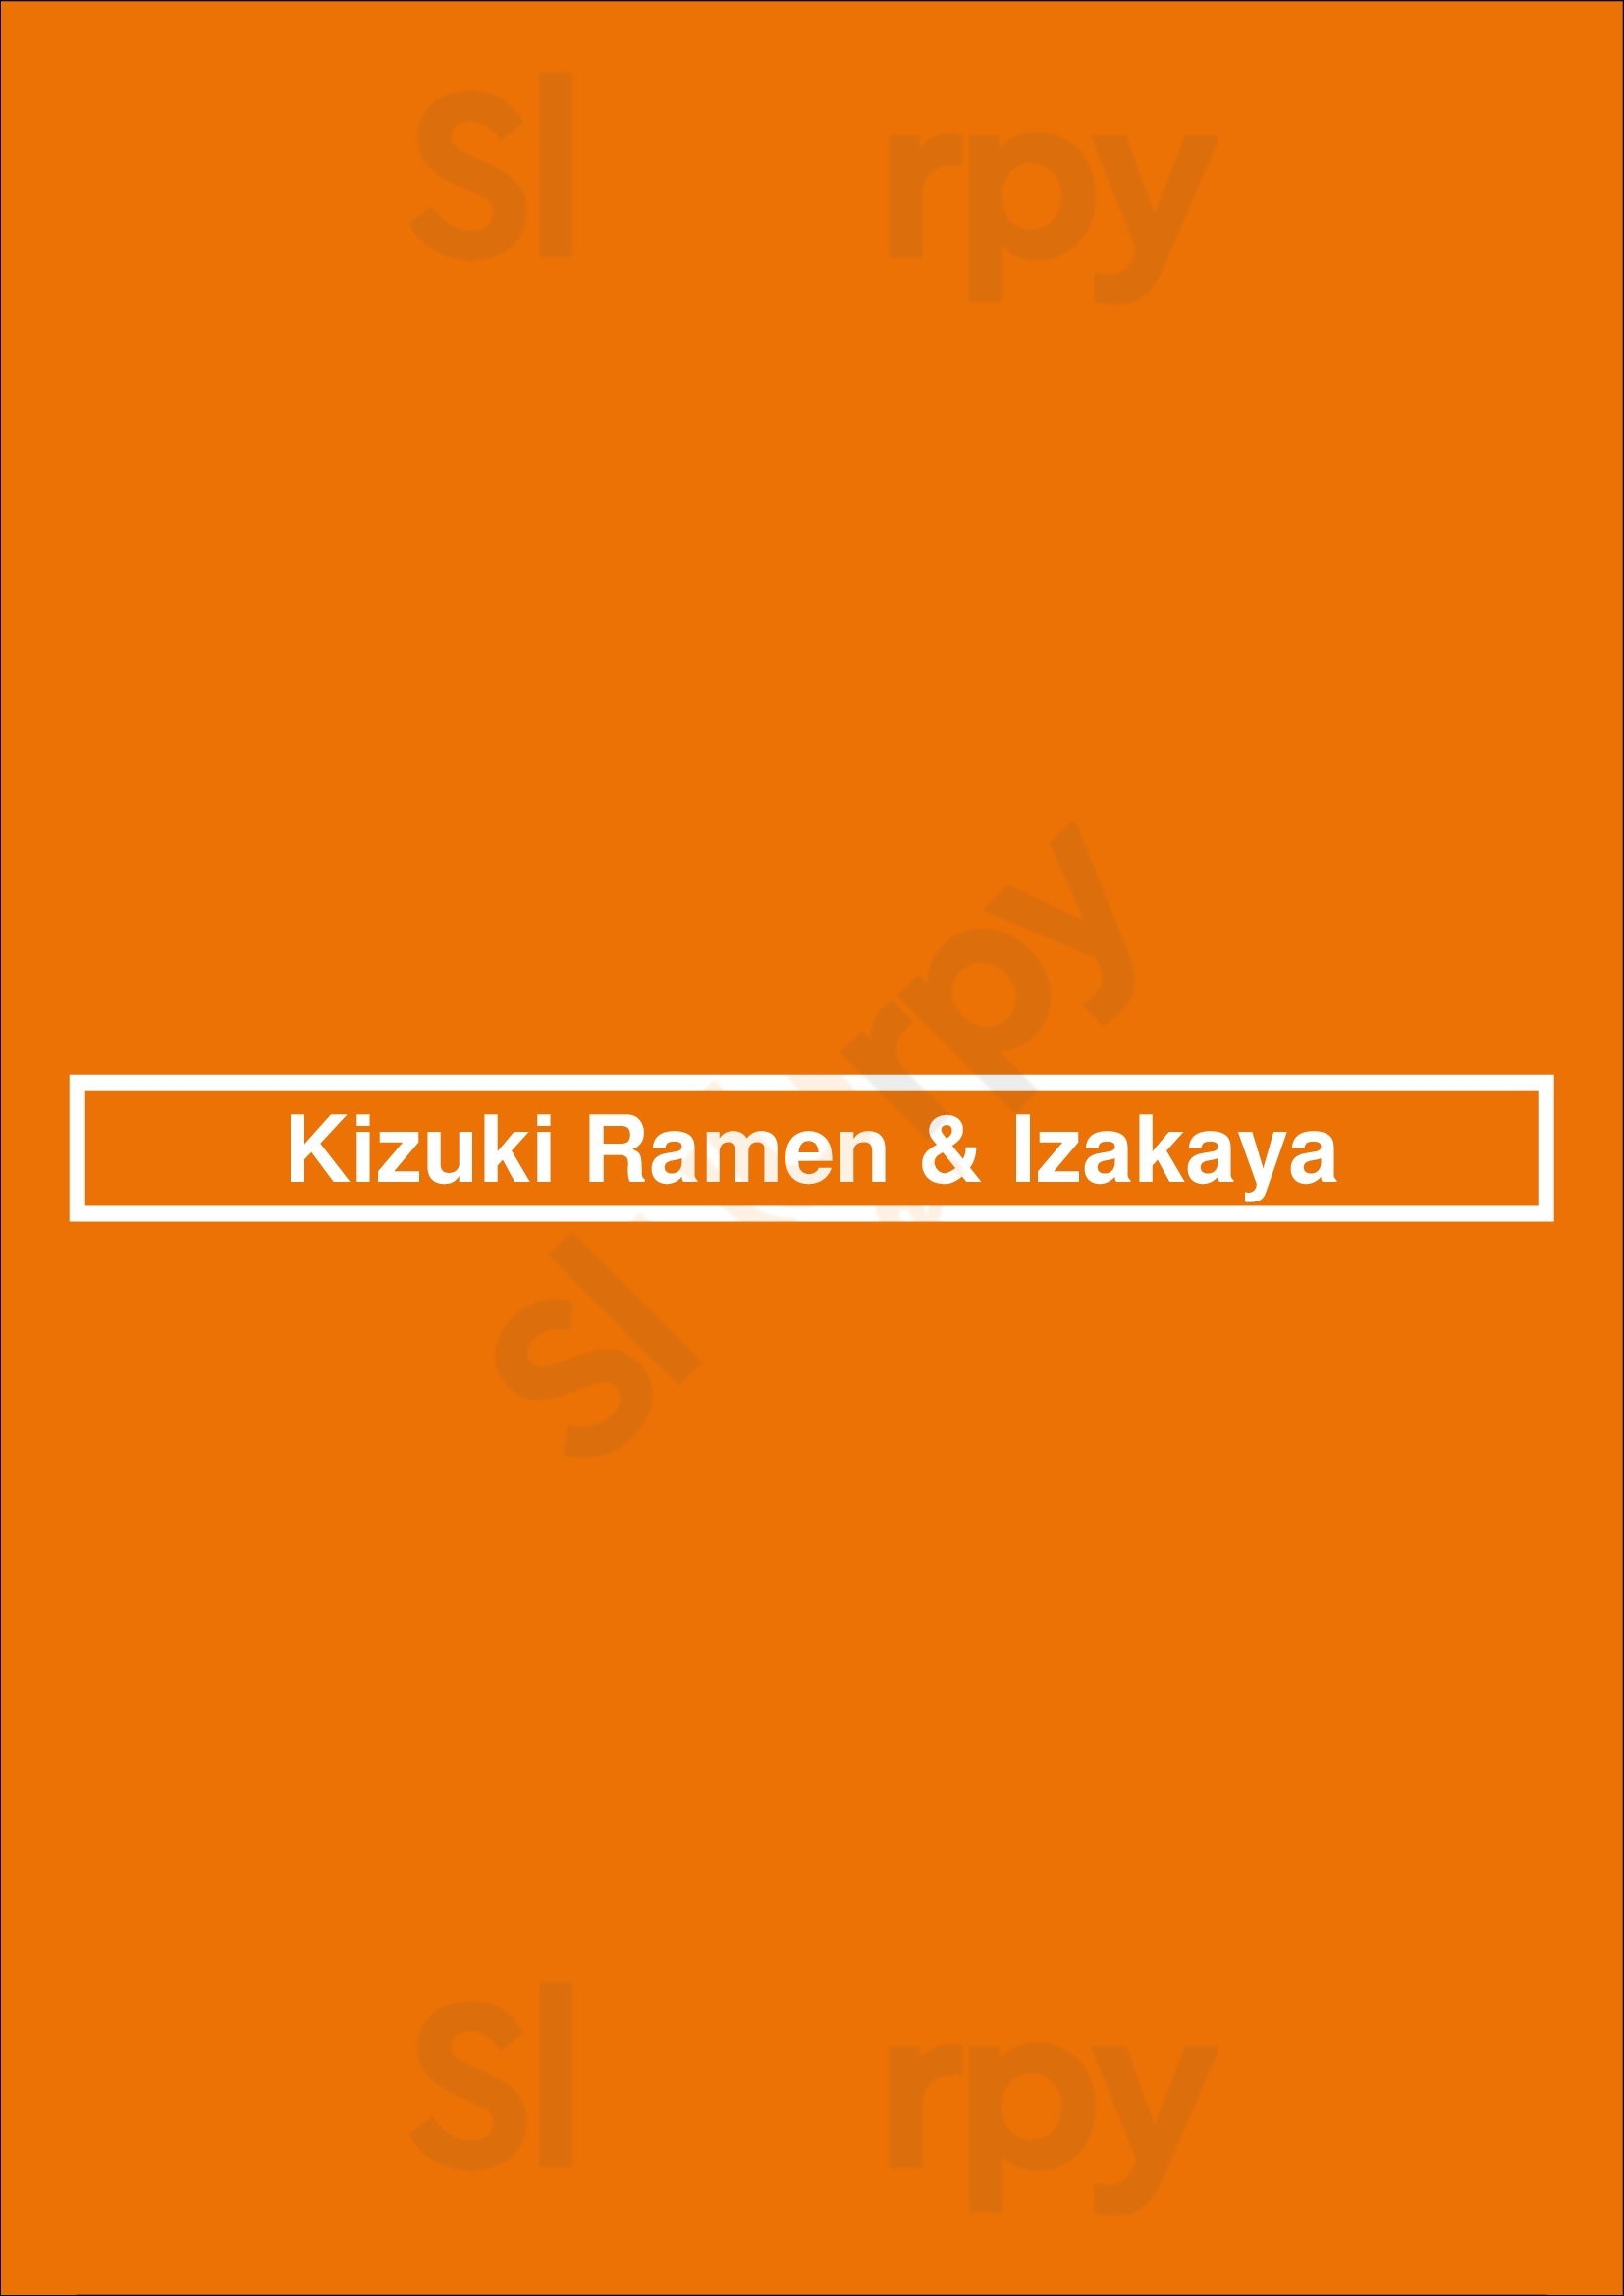 Kizuki Ramen & Izakaya Portland Menu - 1